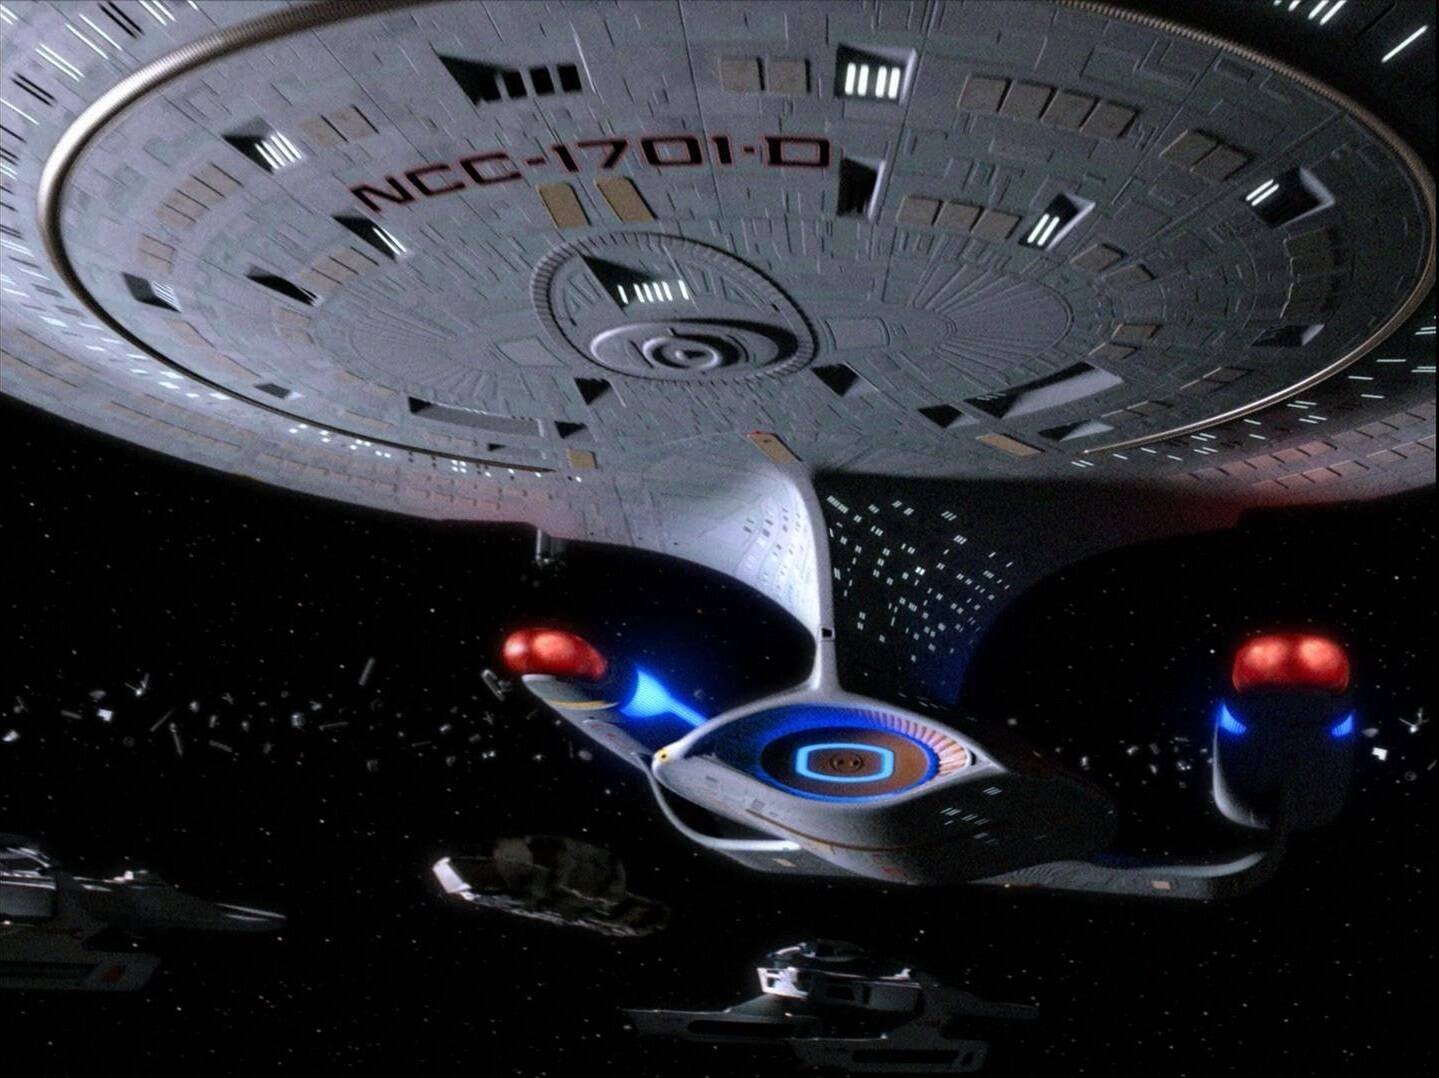 Immagine di Come vedere Star Trek in ordine cronologico in streaming: rotta verso l'ultima frontiera